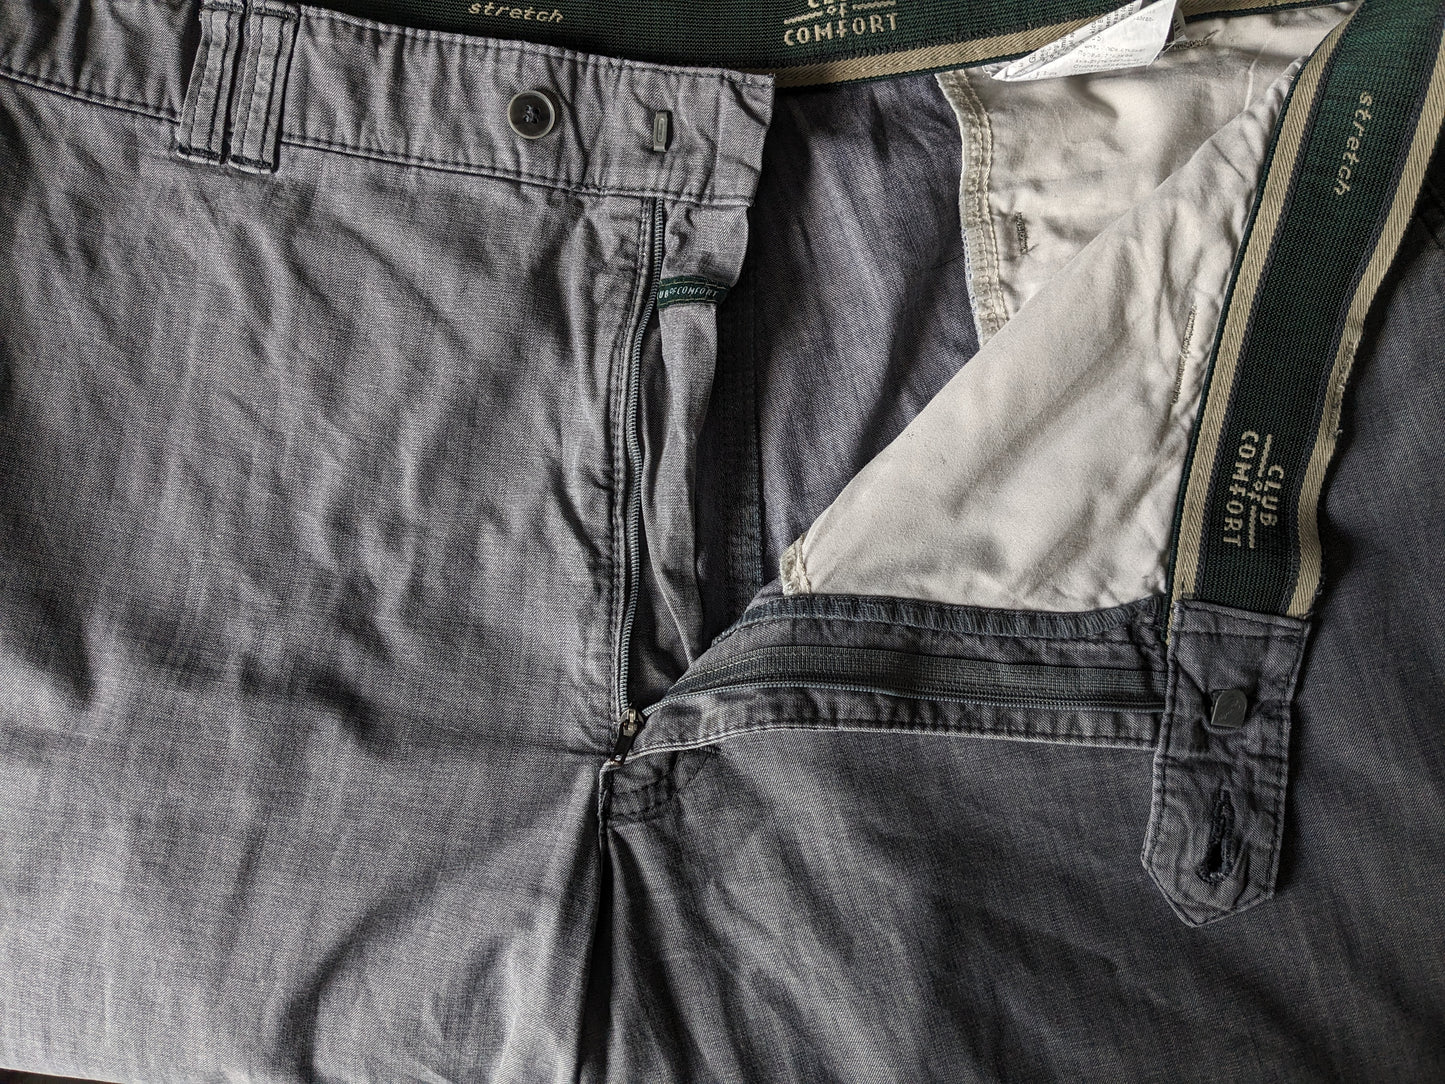 Club ou pantalon / pantalon de confort. Motif gris. Taille 29 (58 / 2xl / xxl)